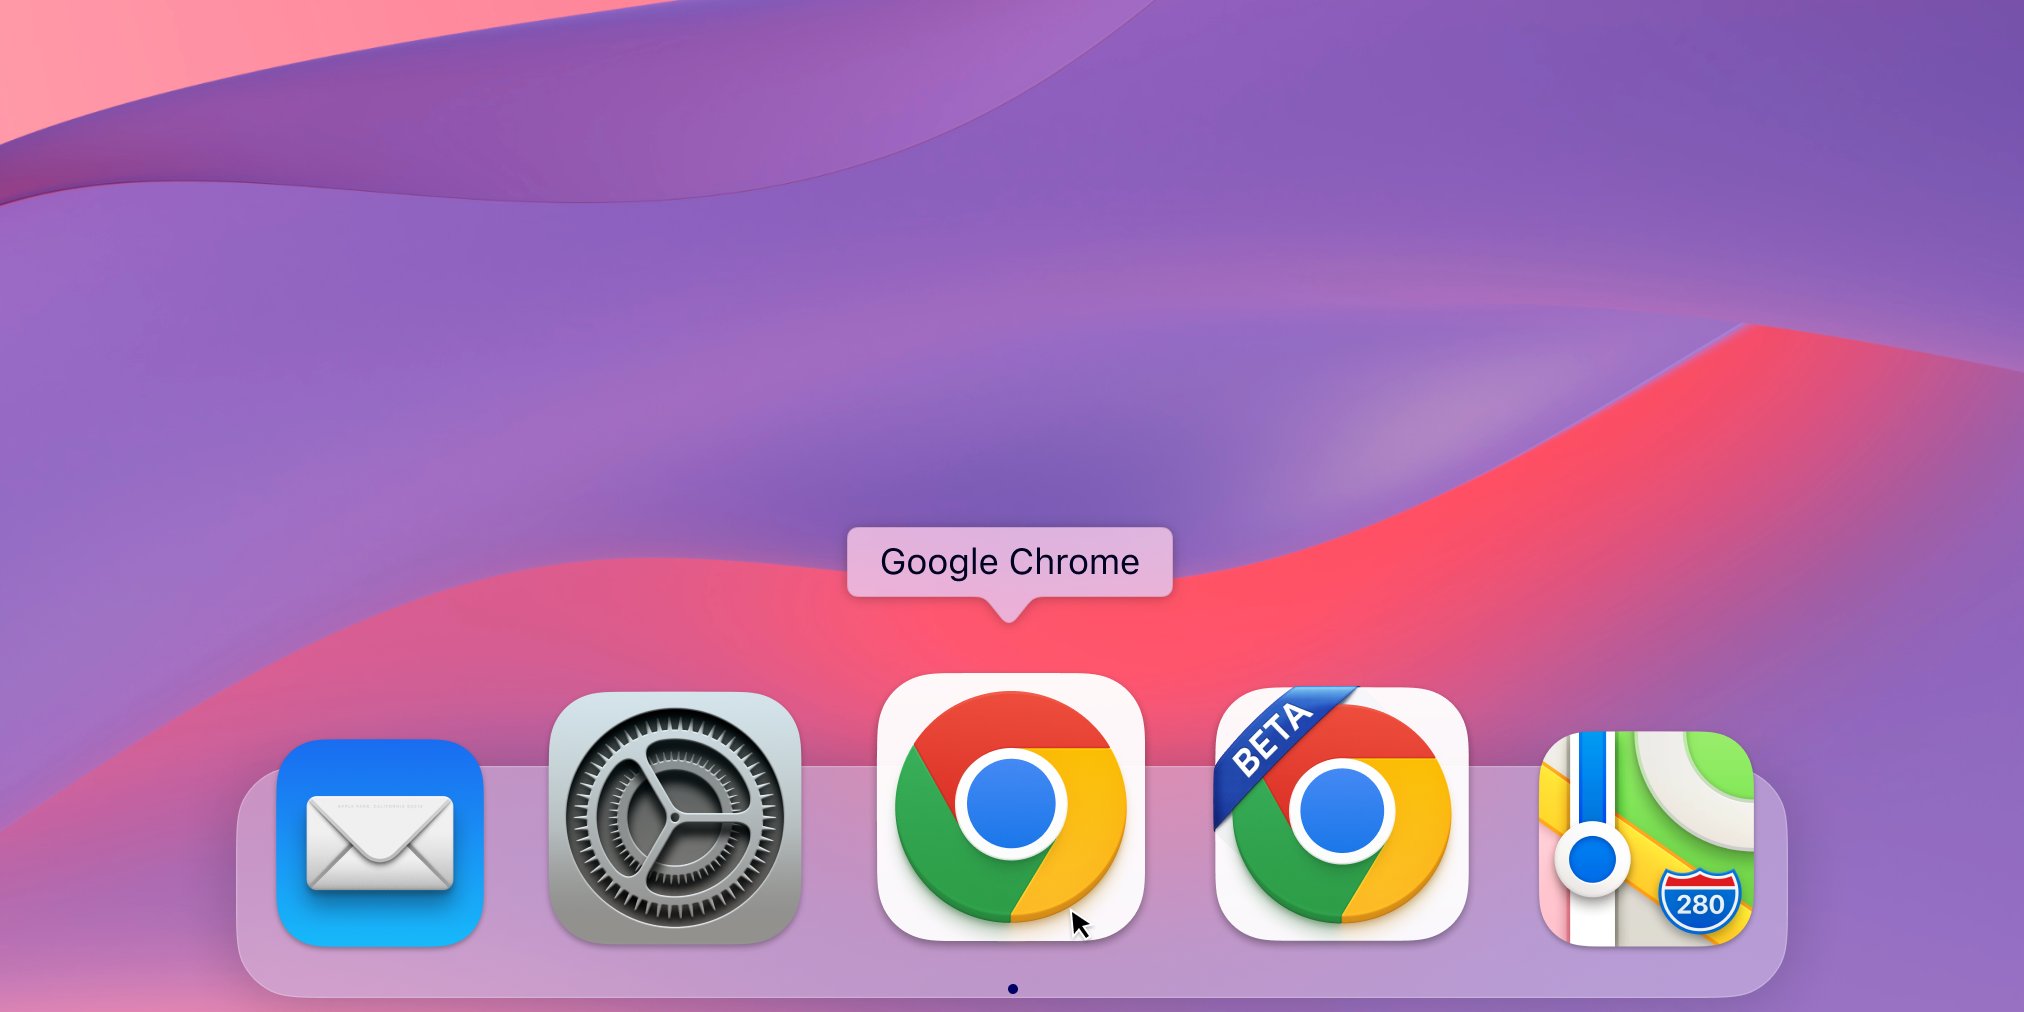 Mise à jour de l'icône Google Chrome